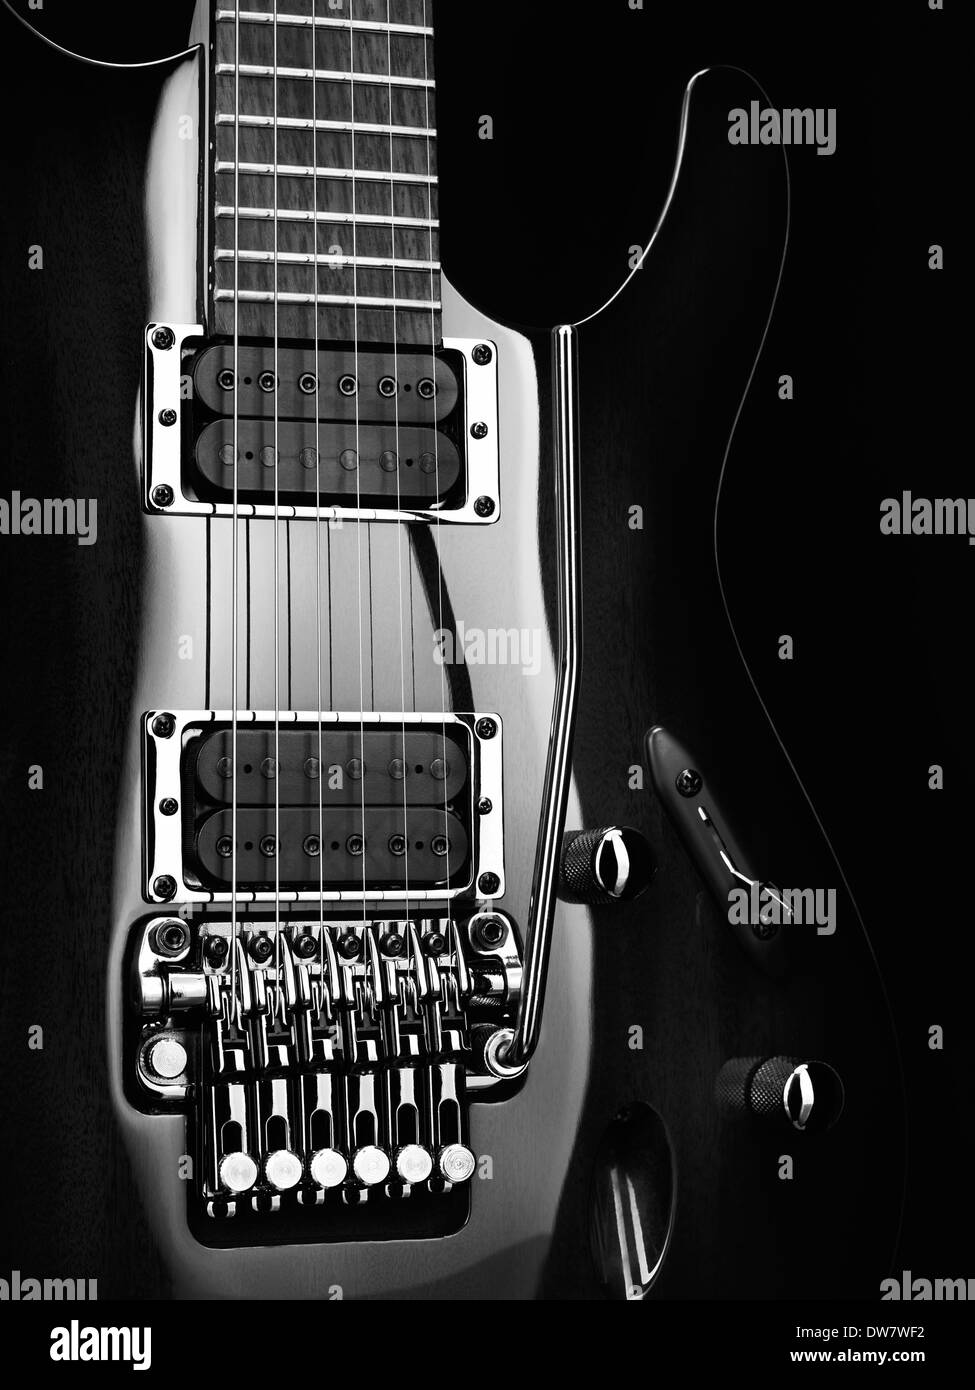 Künstlerische Nahaufnahme von einer e-Gitarre Ibanez mit Chromteile auf schwarzem Hintergrund schwarz / weiß Foto Stockfoto